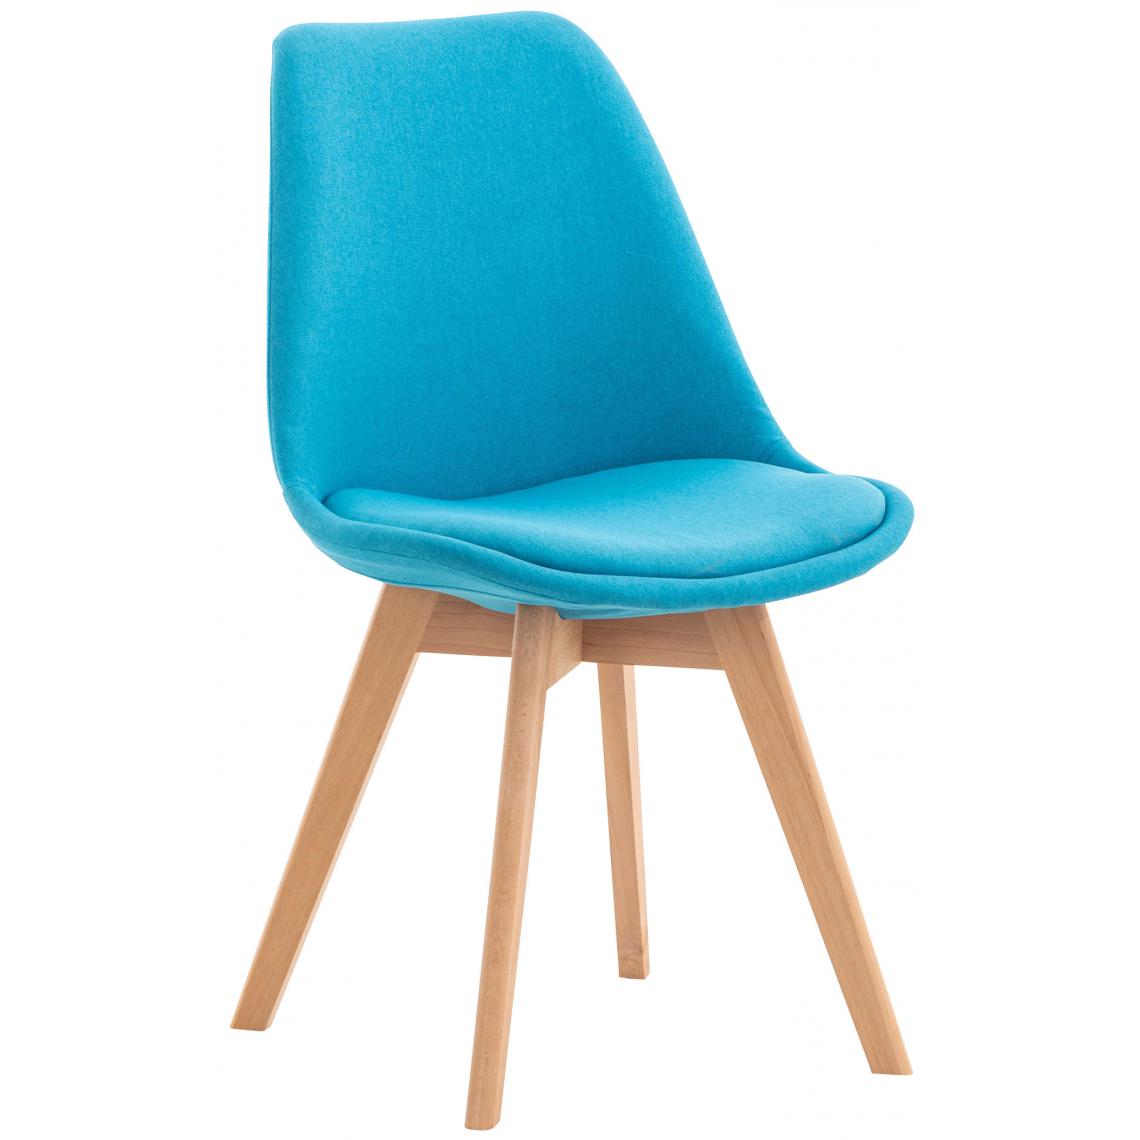 Icaverne - Esthetique Chaise en tissu Oulan-Bator couleur turquoise - Chaises